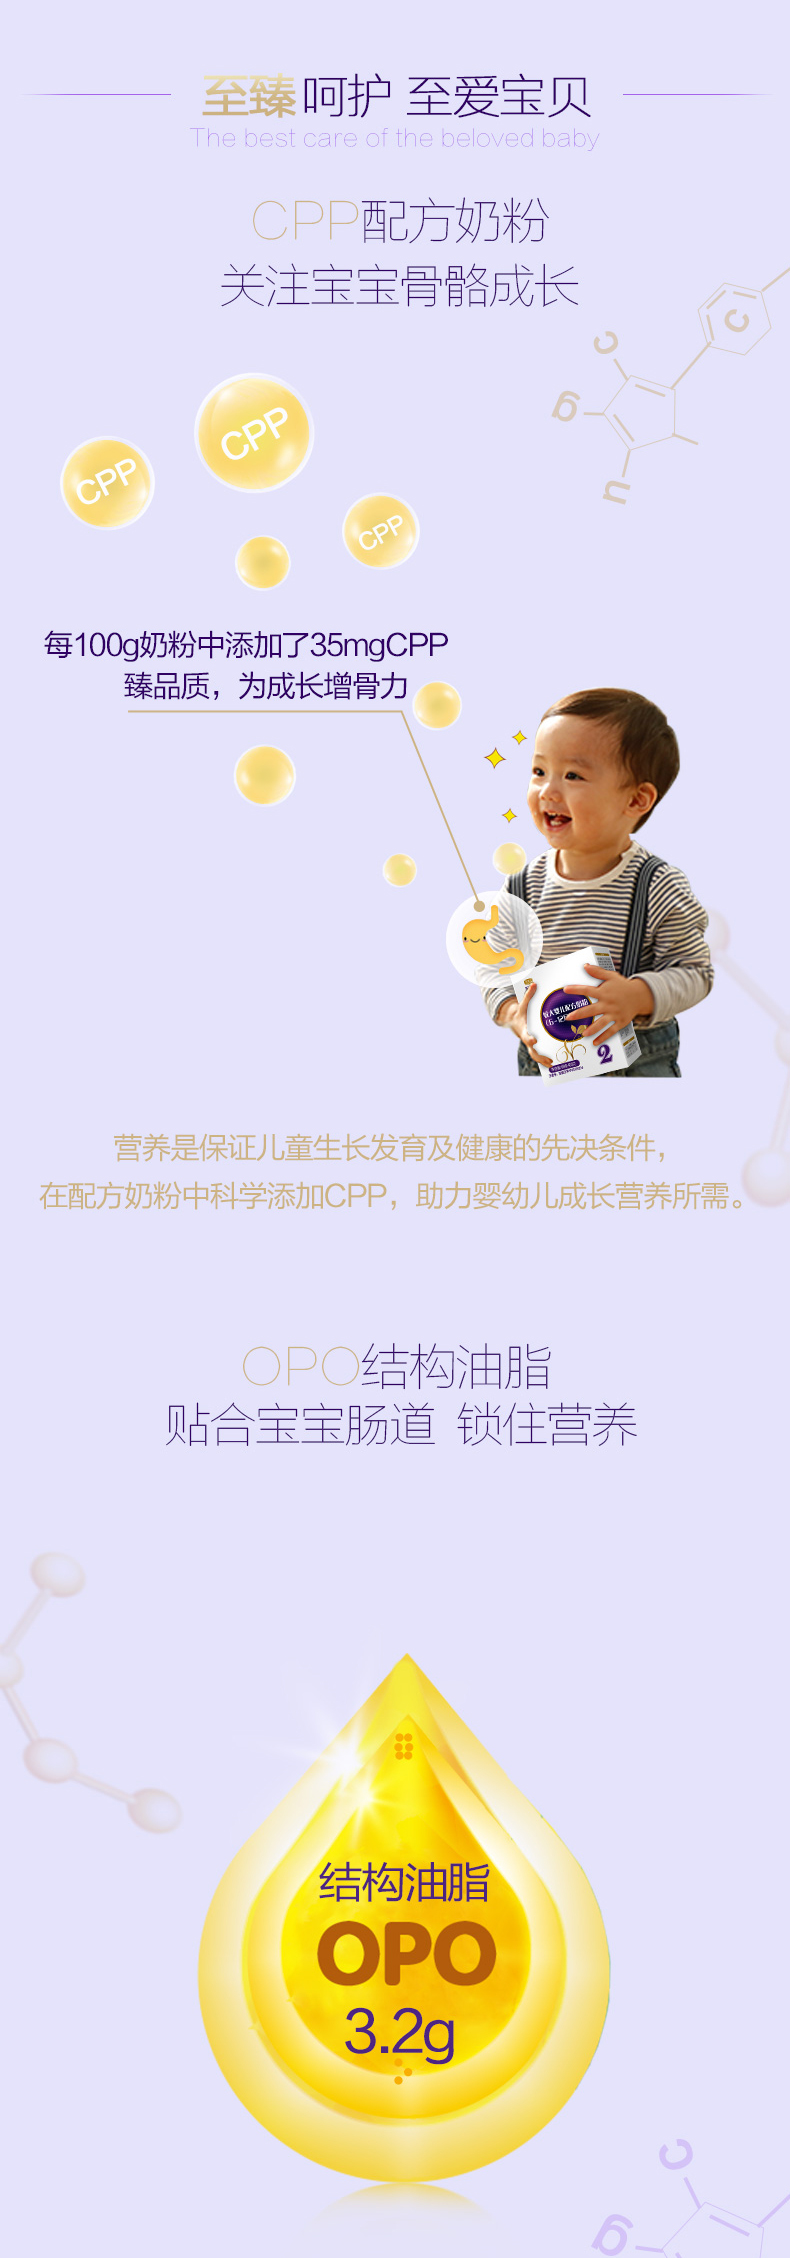 君乐宝(JUNLEBAO)至臻较大婴儿配方奶粉 2段(6-12个月较大婴儿 适用) 400g